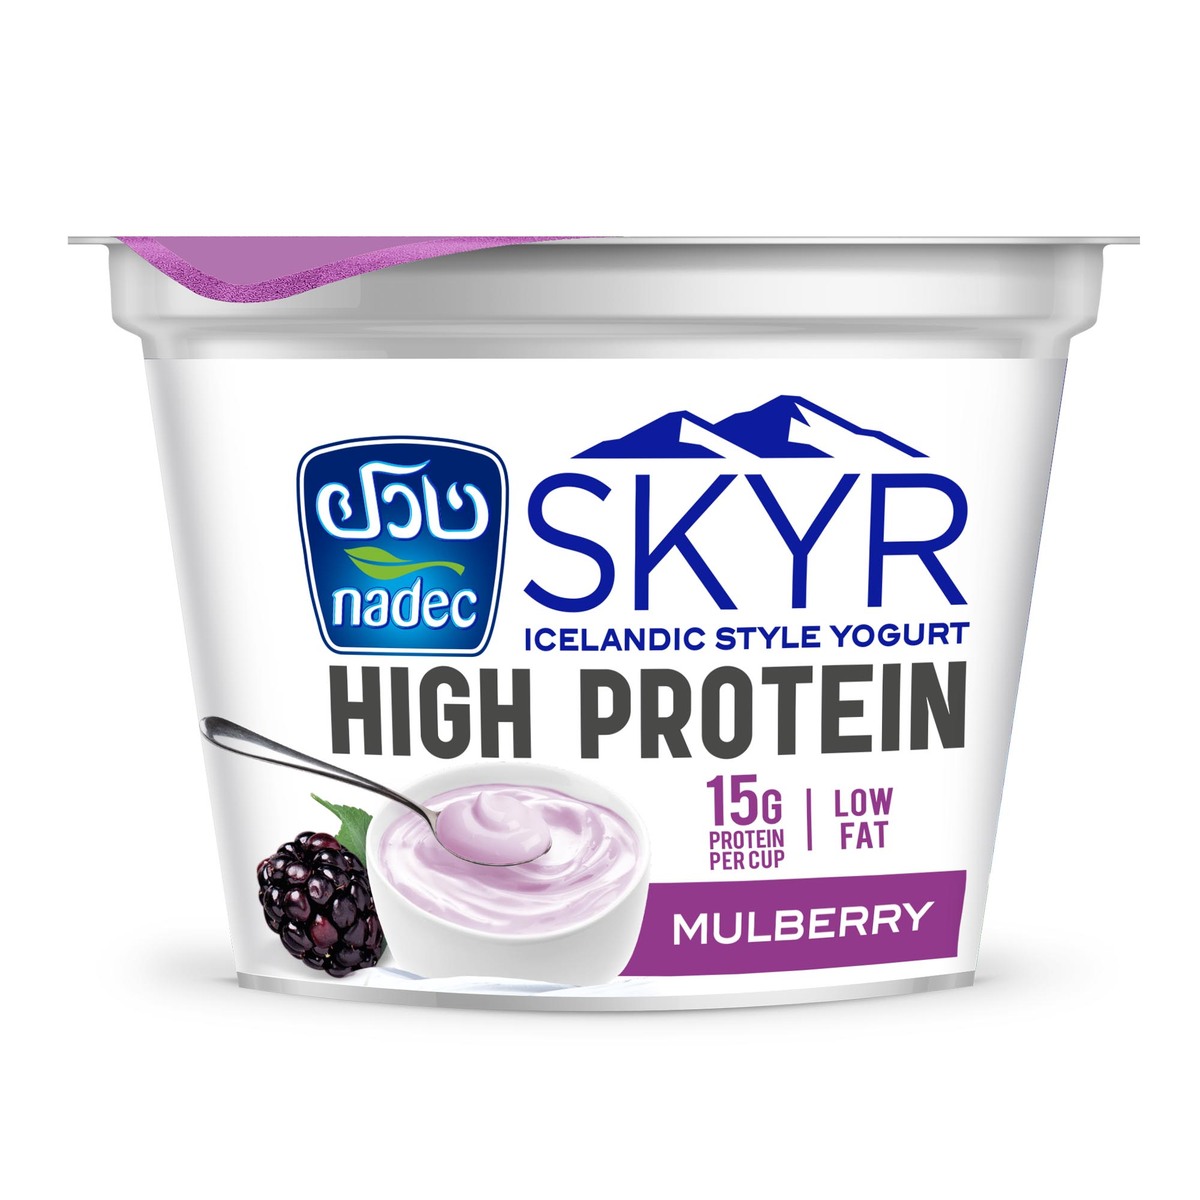 Nadec SKYR High Protein Yogurt Mulberry 160g Online at Best Price ...